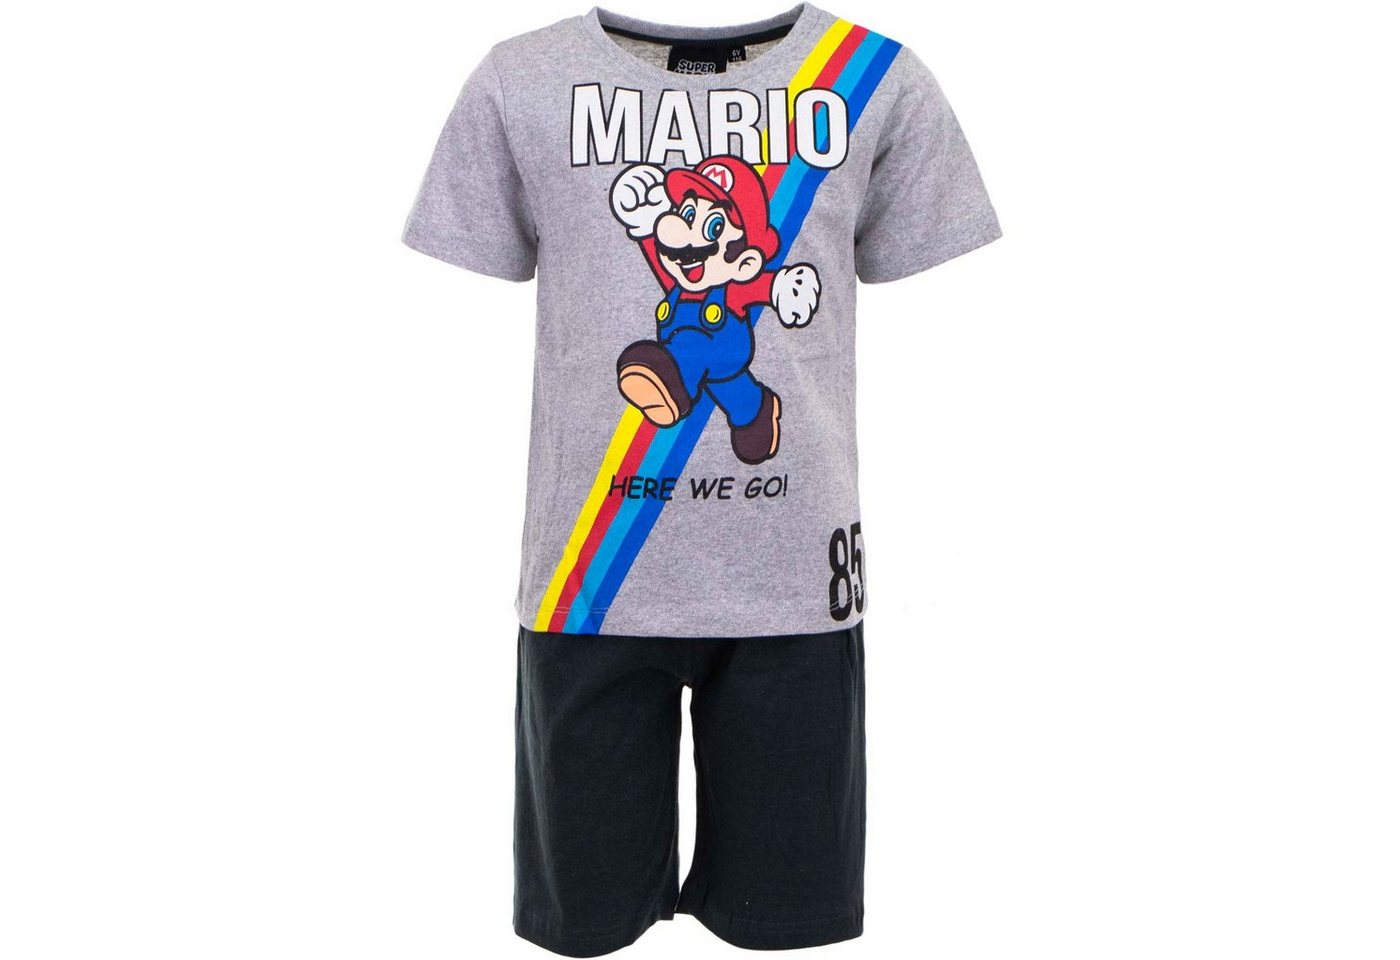 Super Mario Pyjama SUPER MARIO SHORTY PYJAMA Kinder Schlafanzug Jungen + Mädchen 3 4 5 6 7 8 Jahre Gr. 98 104 110 116 122 128 von Super Mario